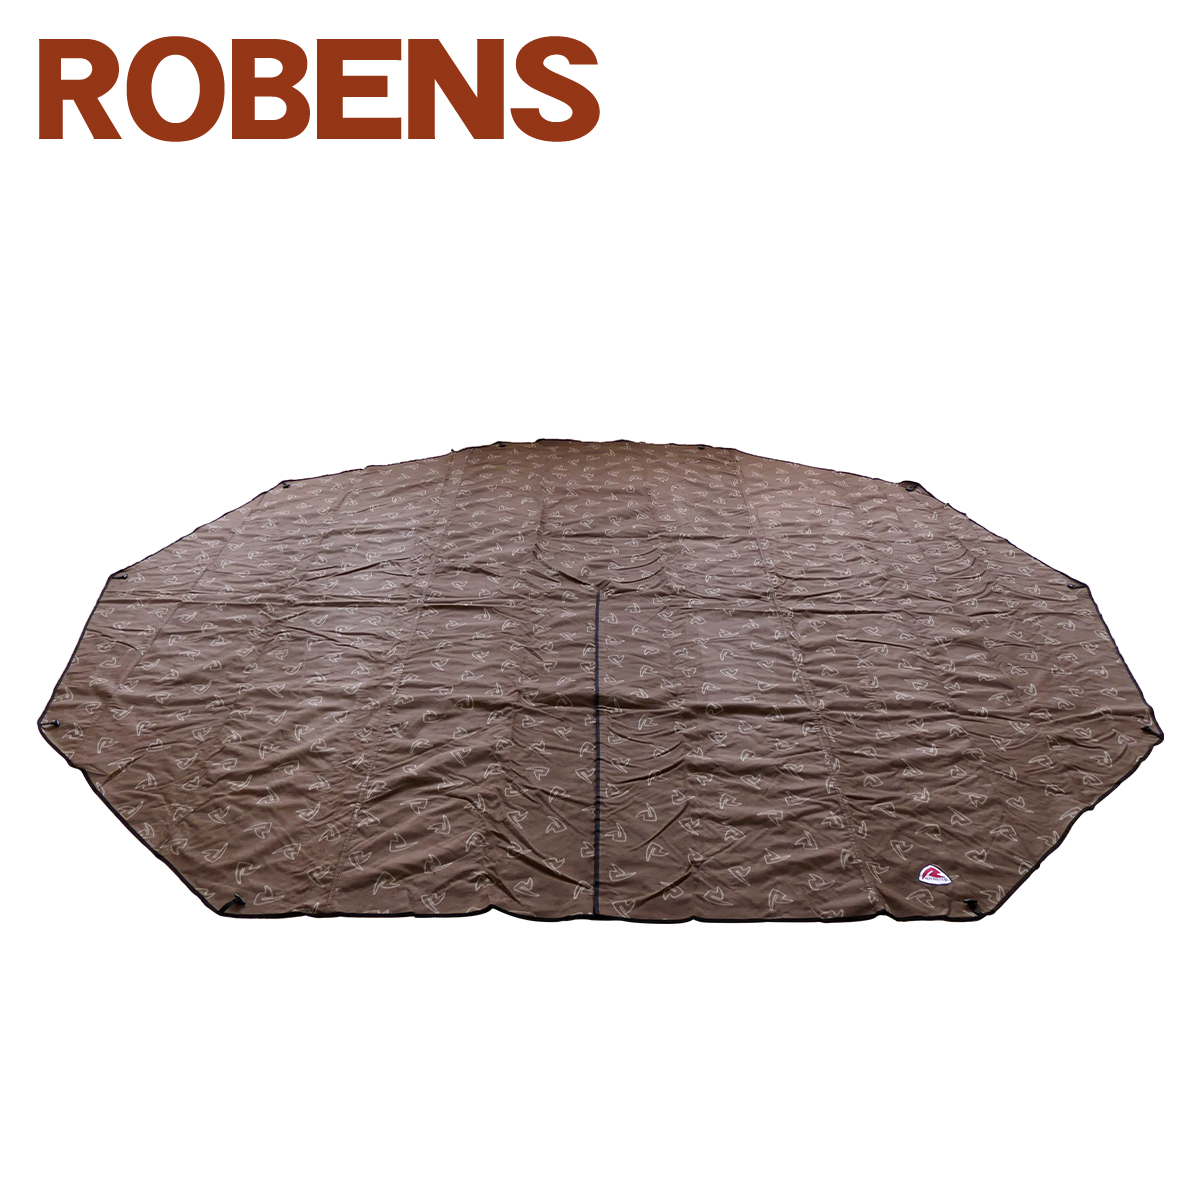 ローベンス Flooring Klondike Grande（クロンダイク グランデ）専用フロアカーペット 190017 アウトバック レンジシリーズ  Robens | daily-3